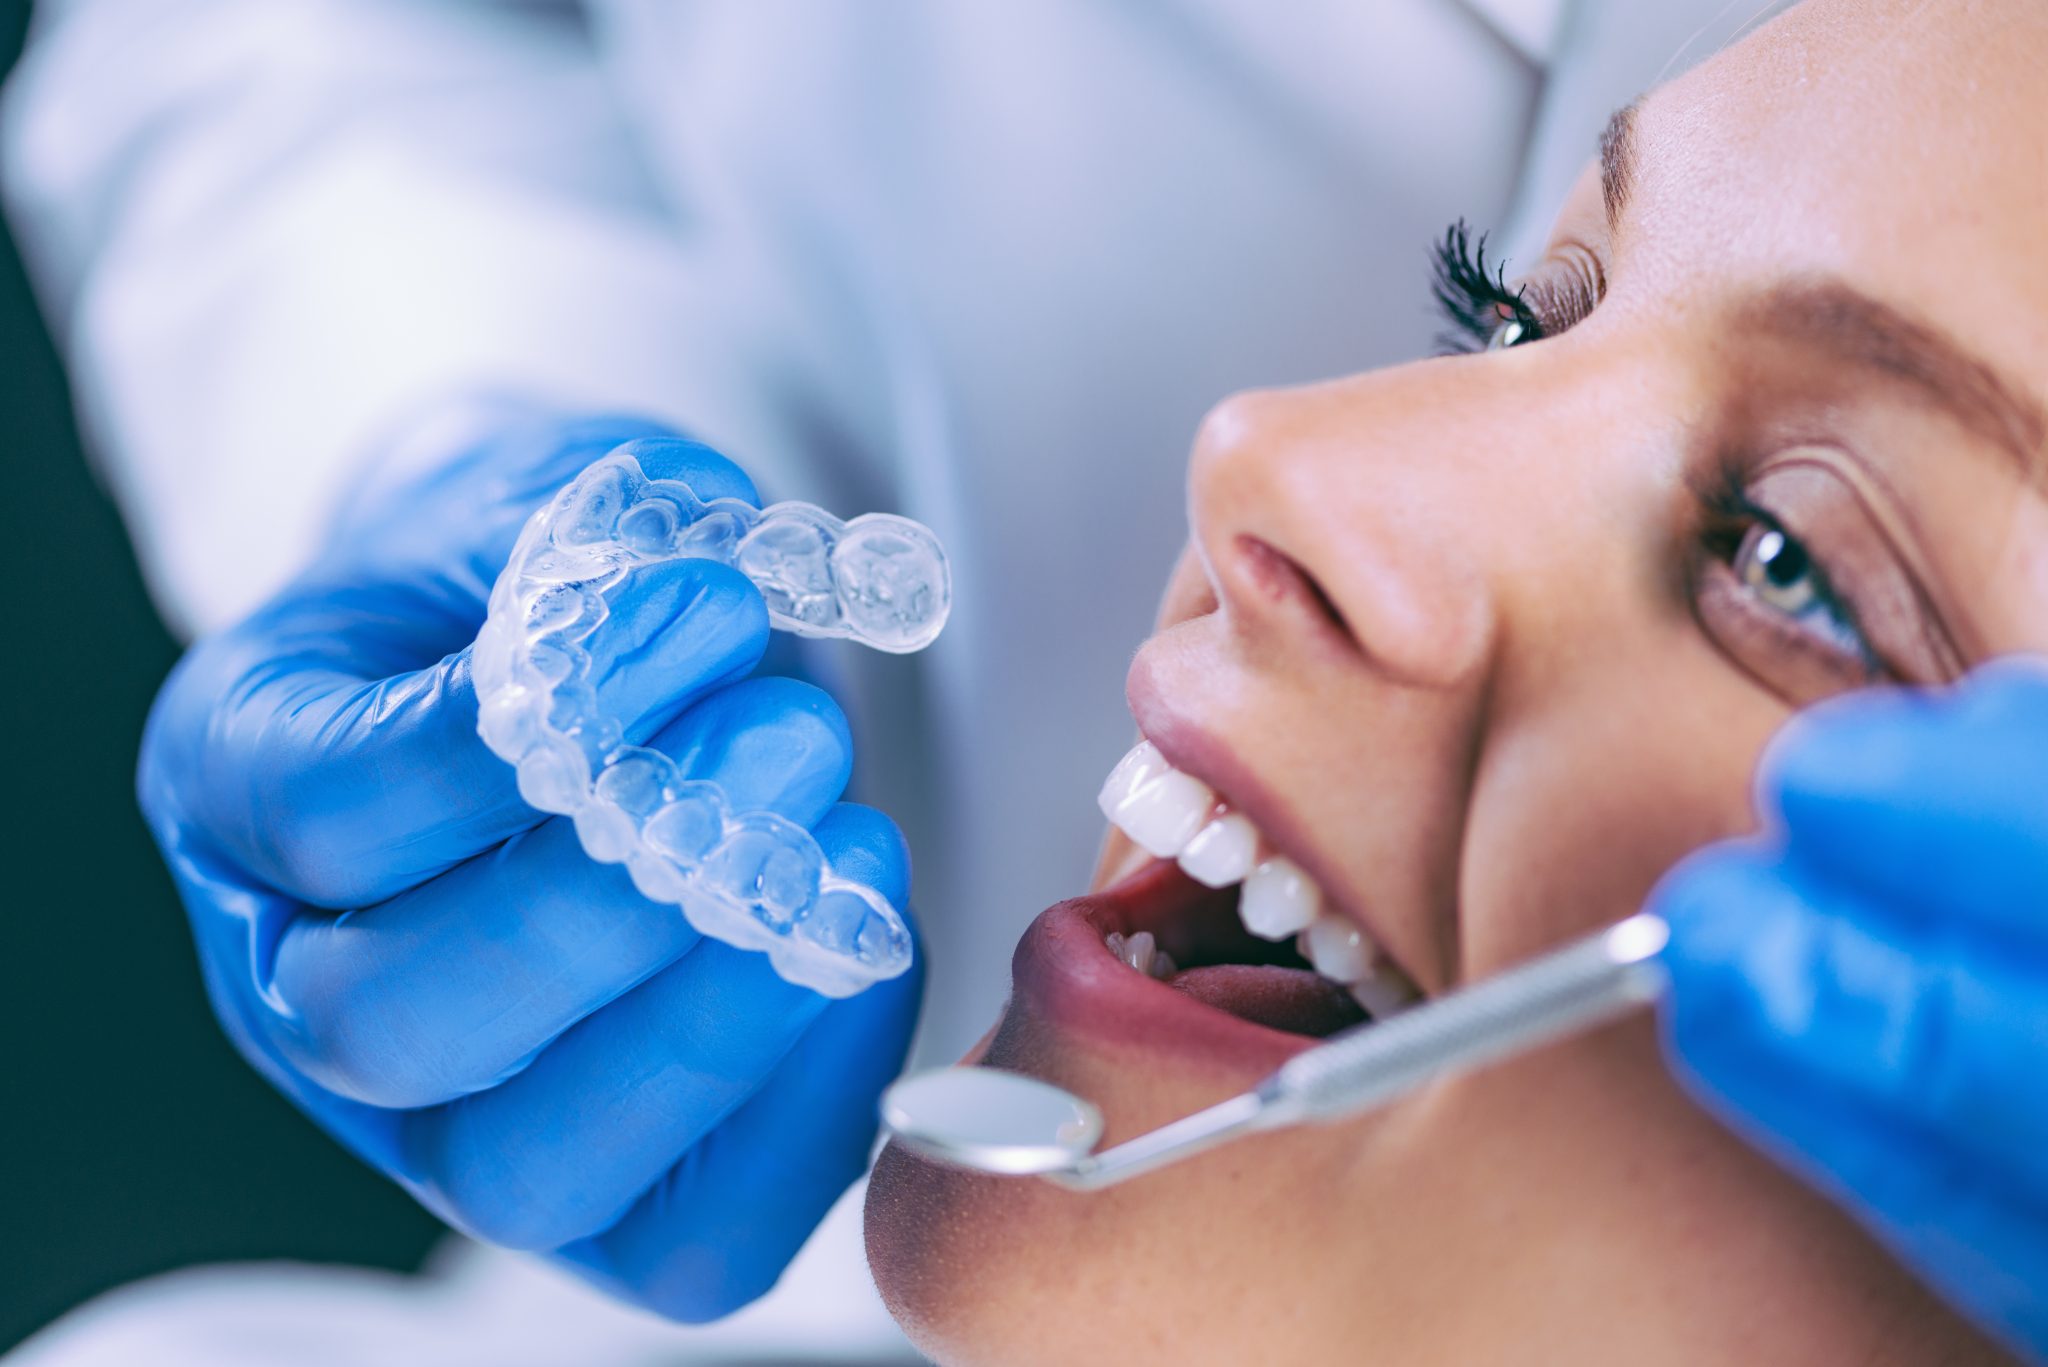 Descubra as principais vantagens do tratamento com aparelho ortodôntico autoligado. - image clareamento-dental-procedimento-1-scaled on https://molinosodontologia.com.br